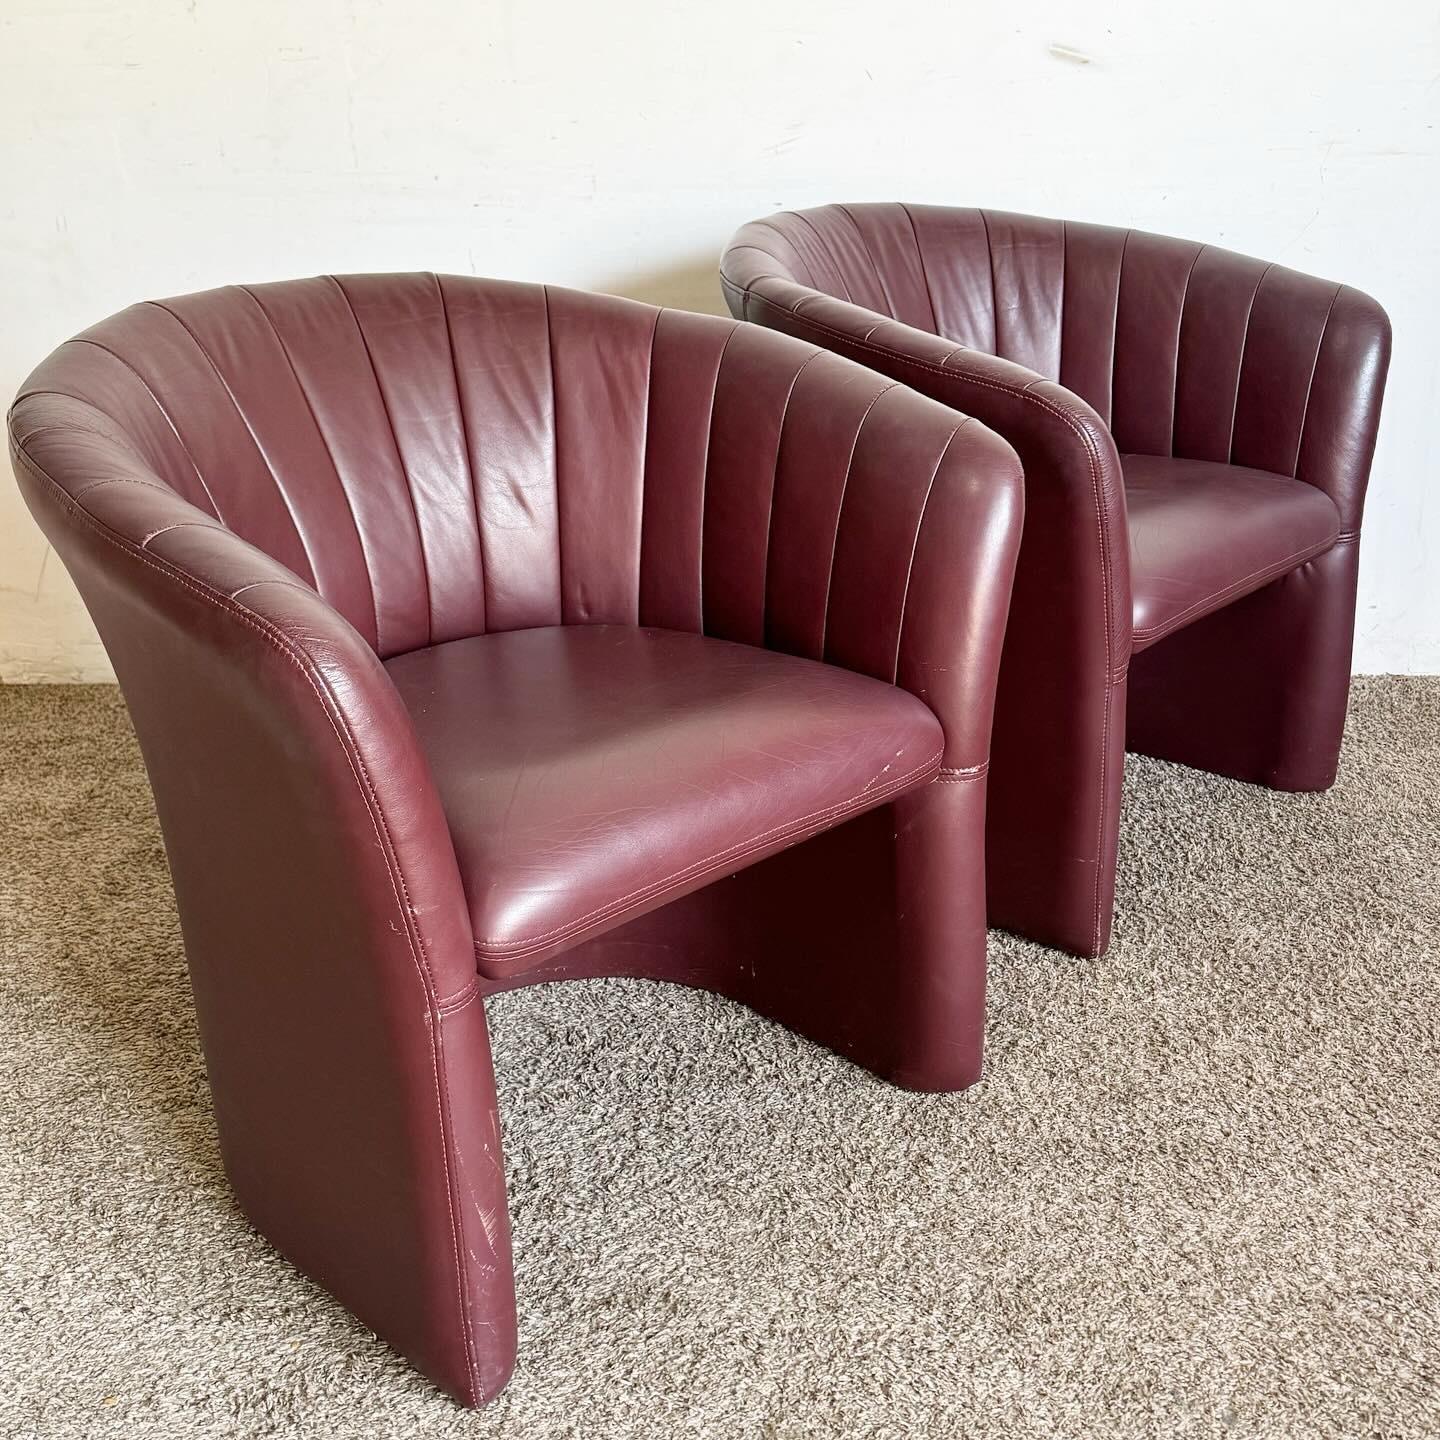 Entdecken Sie die Eleganz der kastanienbraunen Kunstlederstühle mit Muschelschale. Mit ihrem einzigartigen Design und der luxuriösen Polsterung verleihen diese Stühle jedem Raum einen raffinierten Touch und vereinen Komfort mit postmodernem Flair.